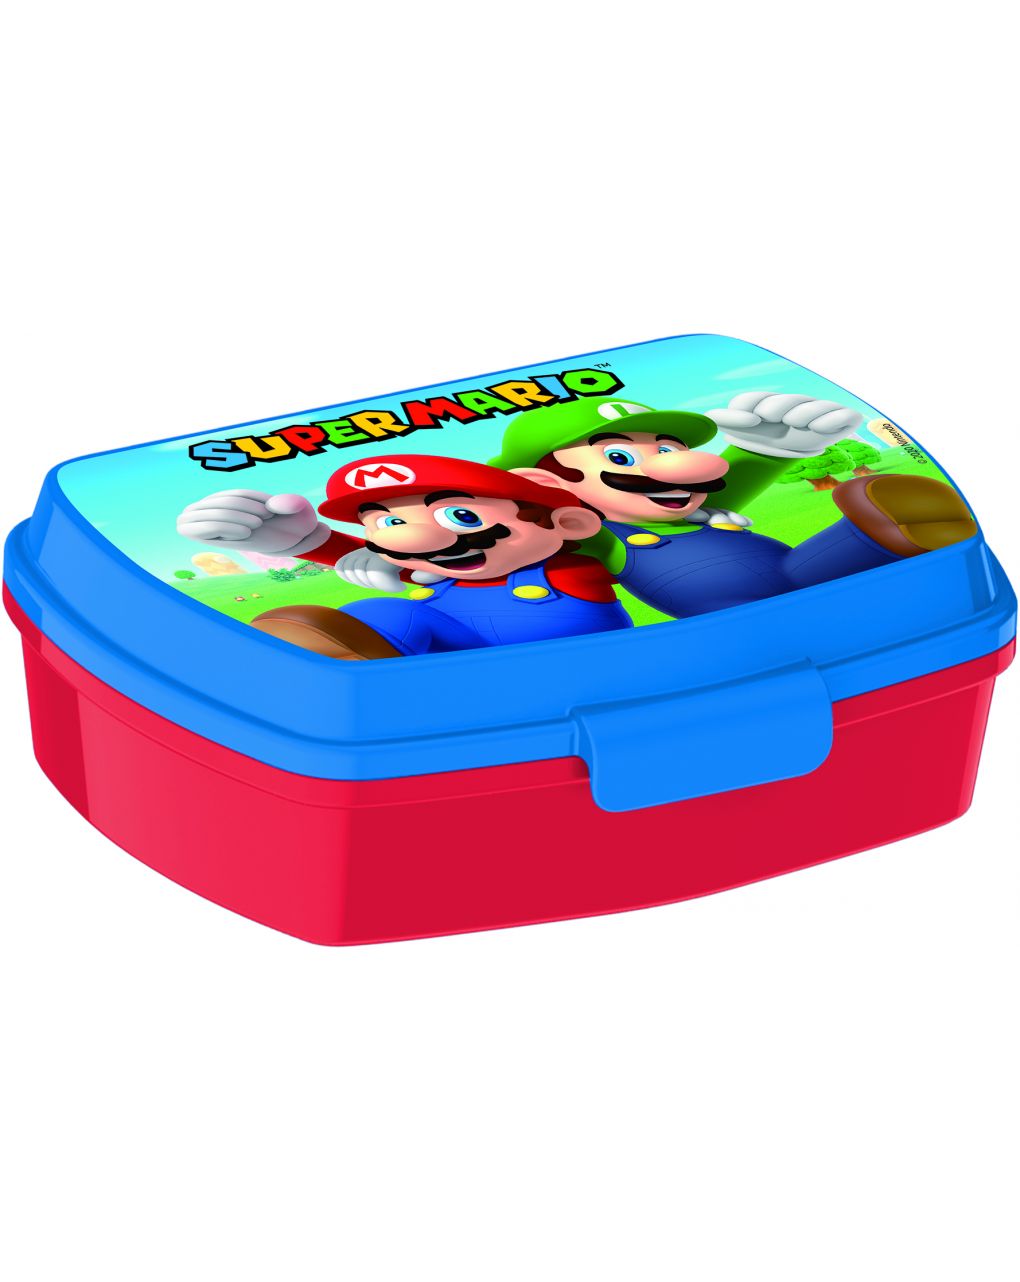 Super mario bros. - sandwich box funny - Nintendo